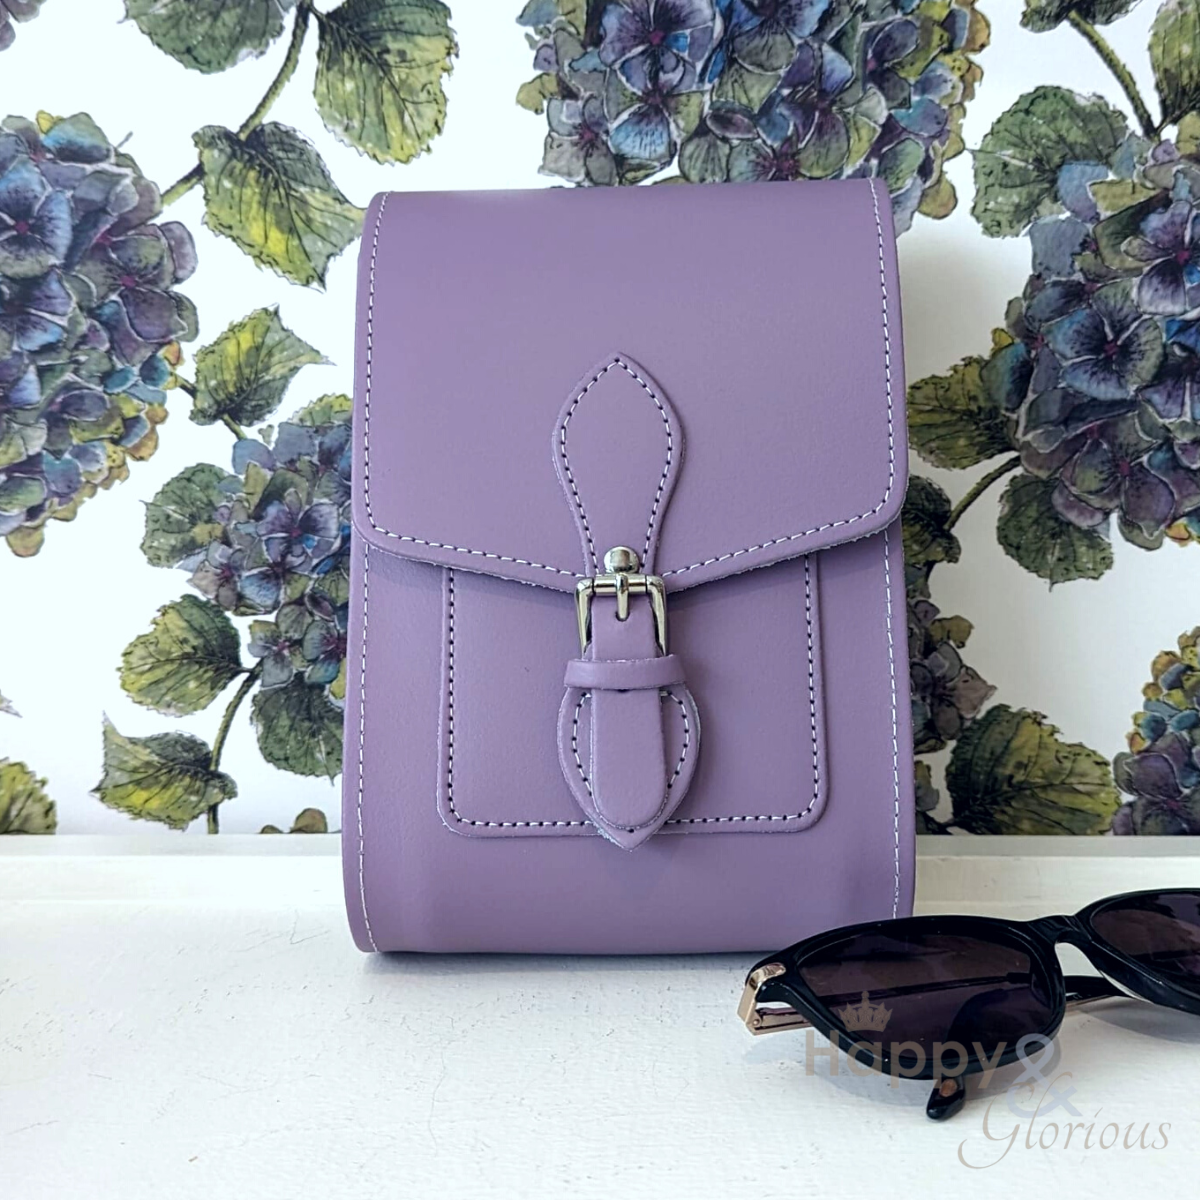 Lavender leather festival bag